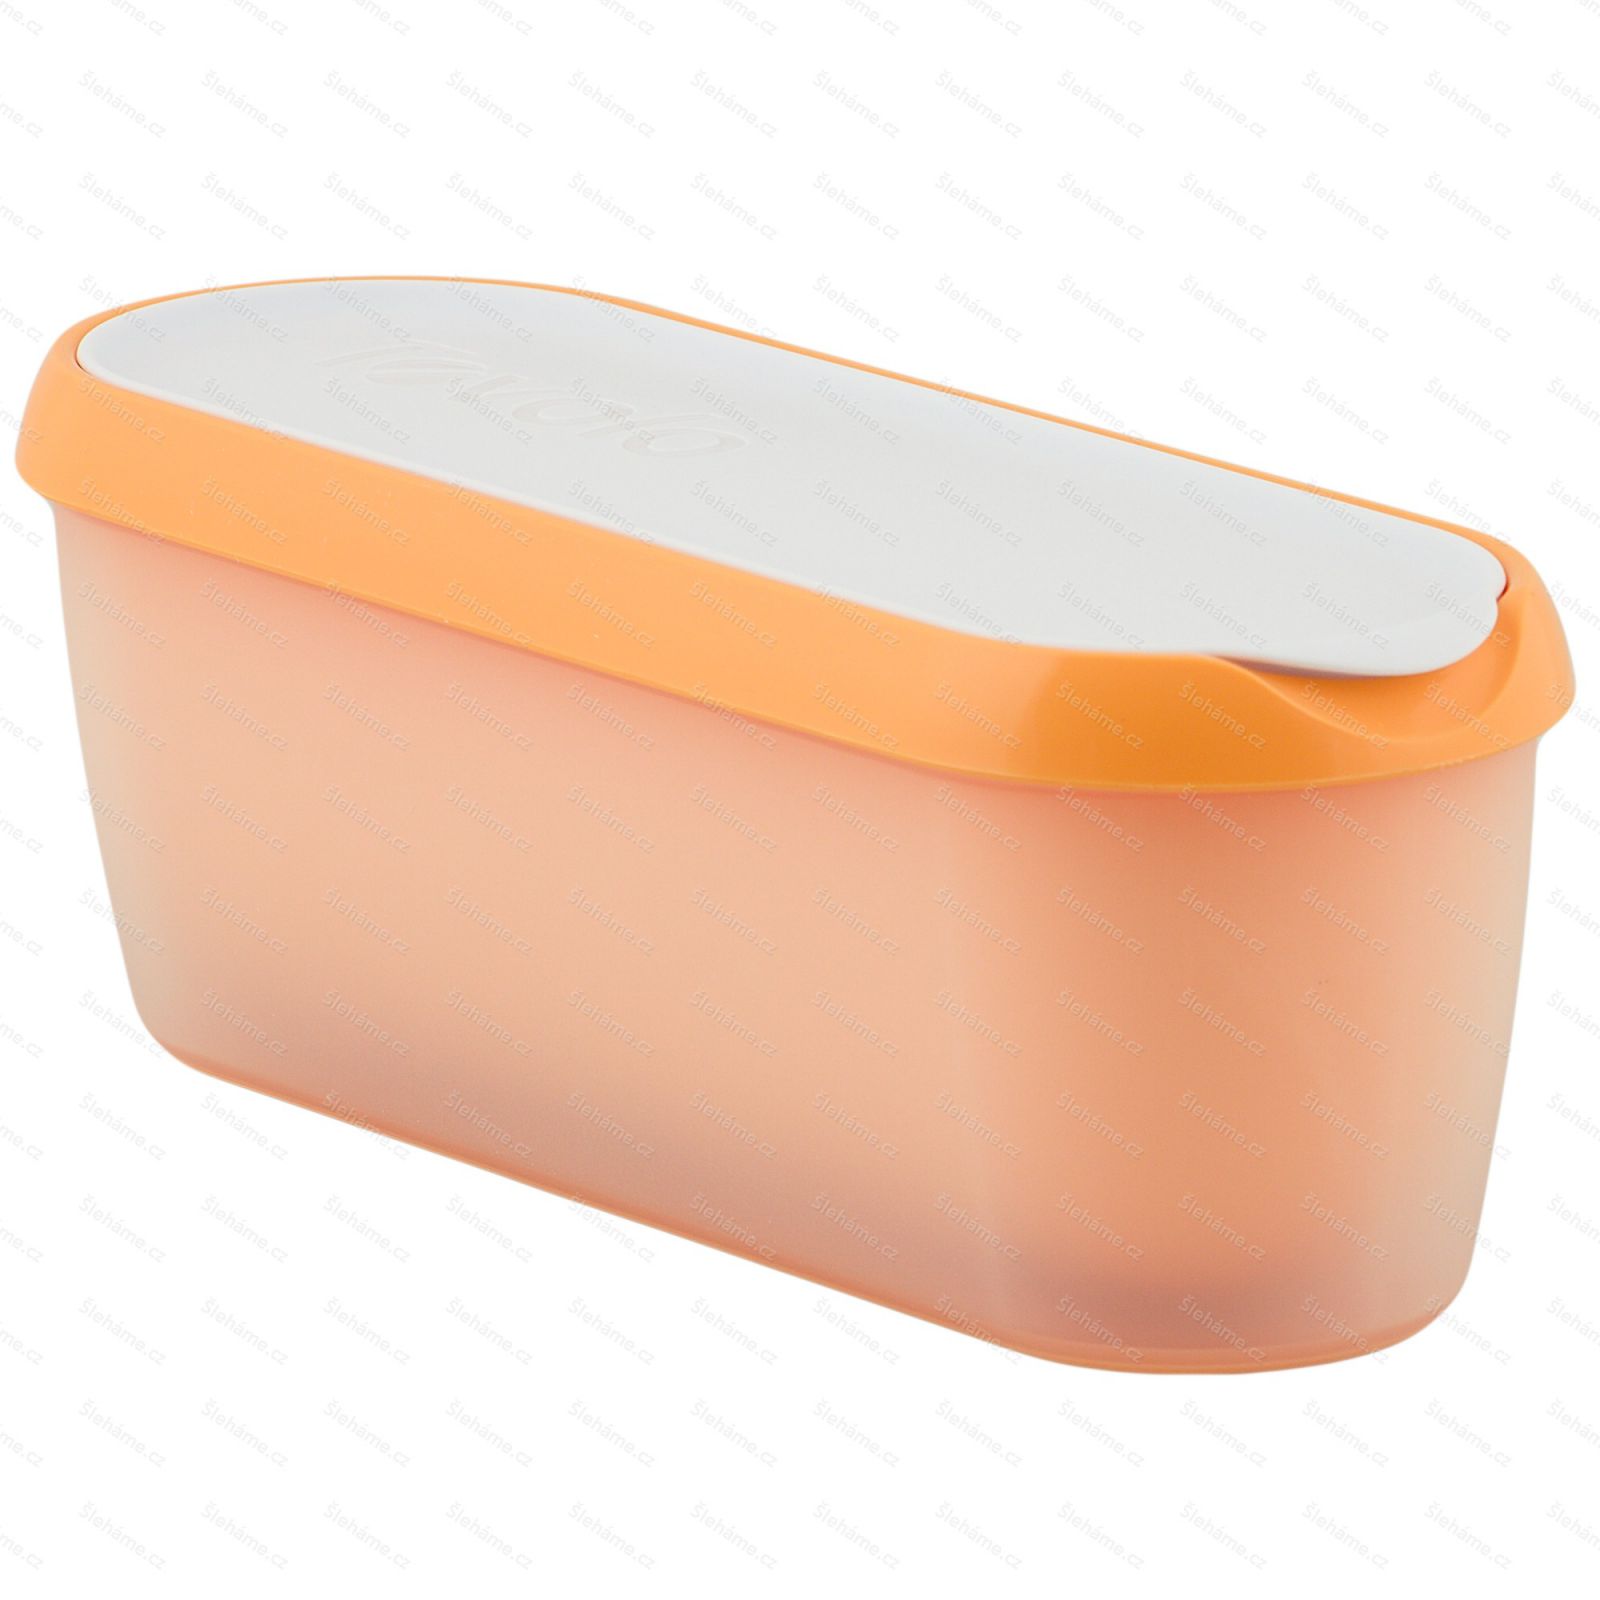 Ice cream tub Tovolo GLIDE-A-SCOOP 1.4 l, orange crush - hlavný pohľad